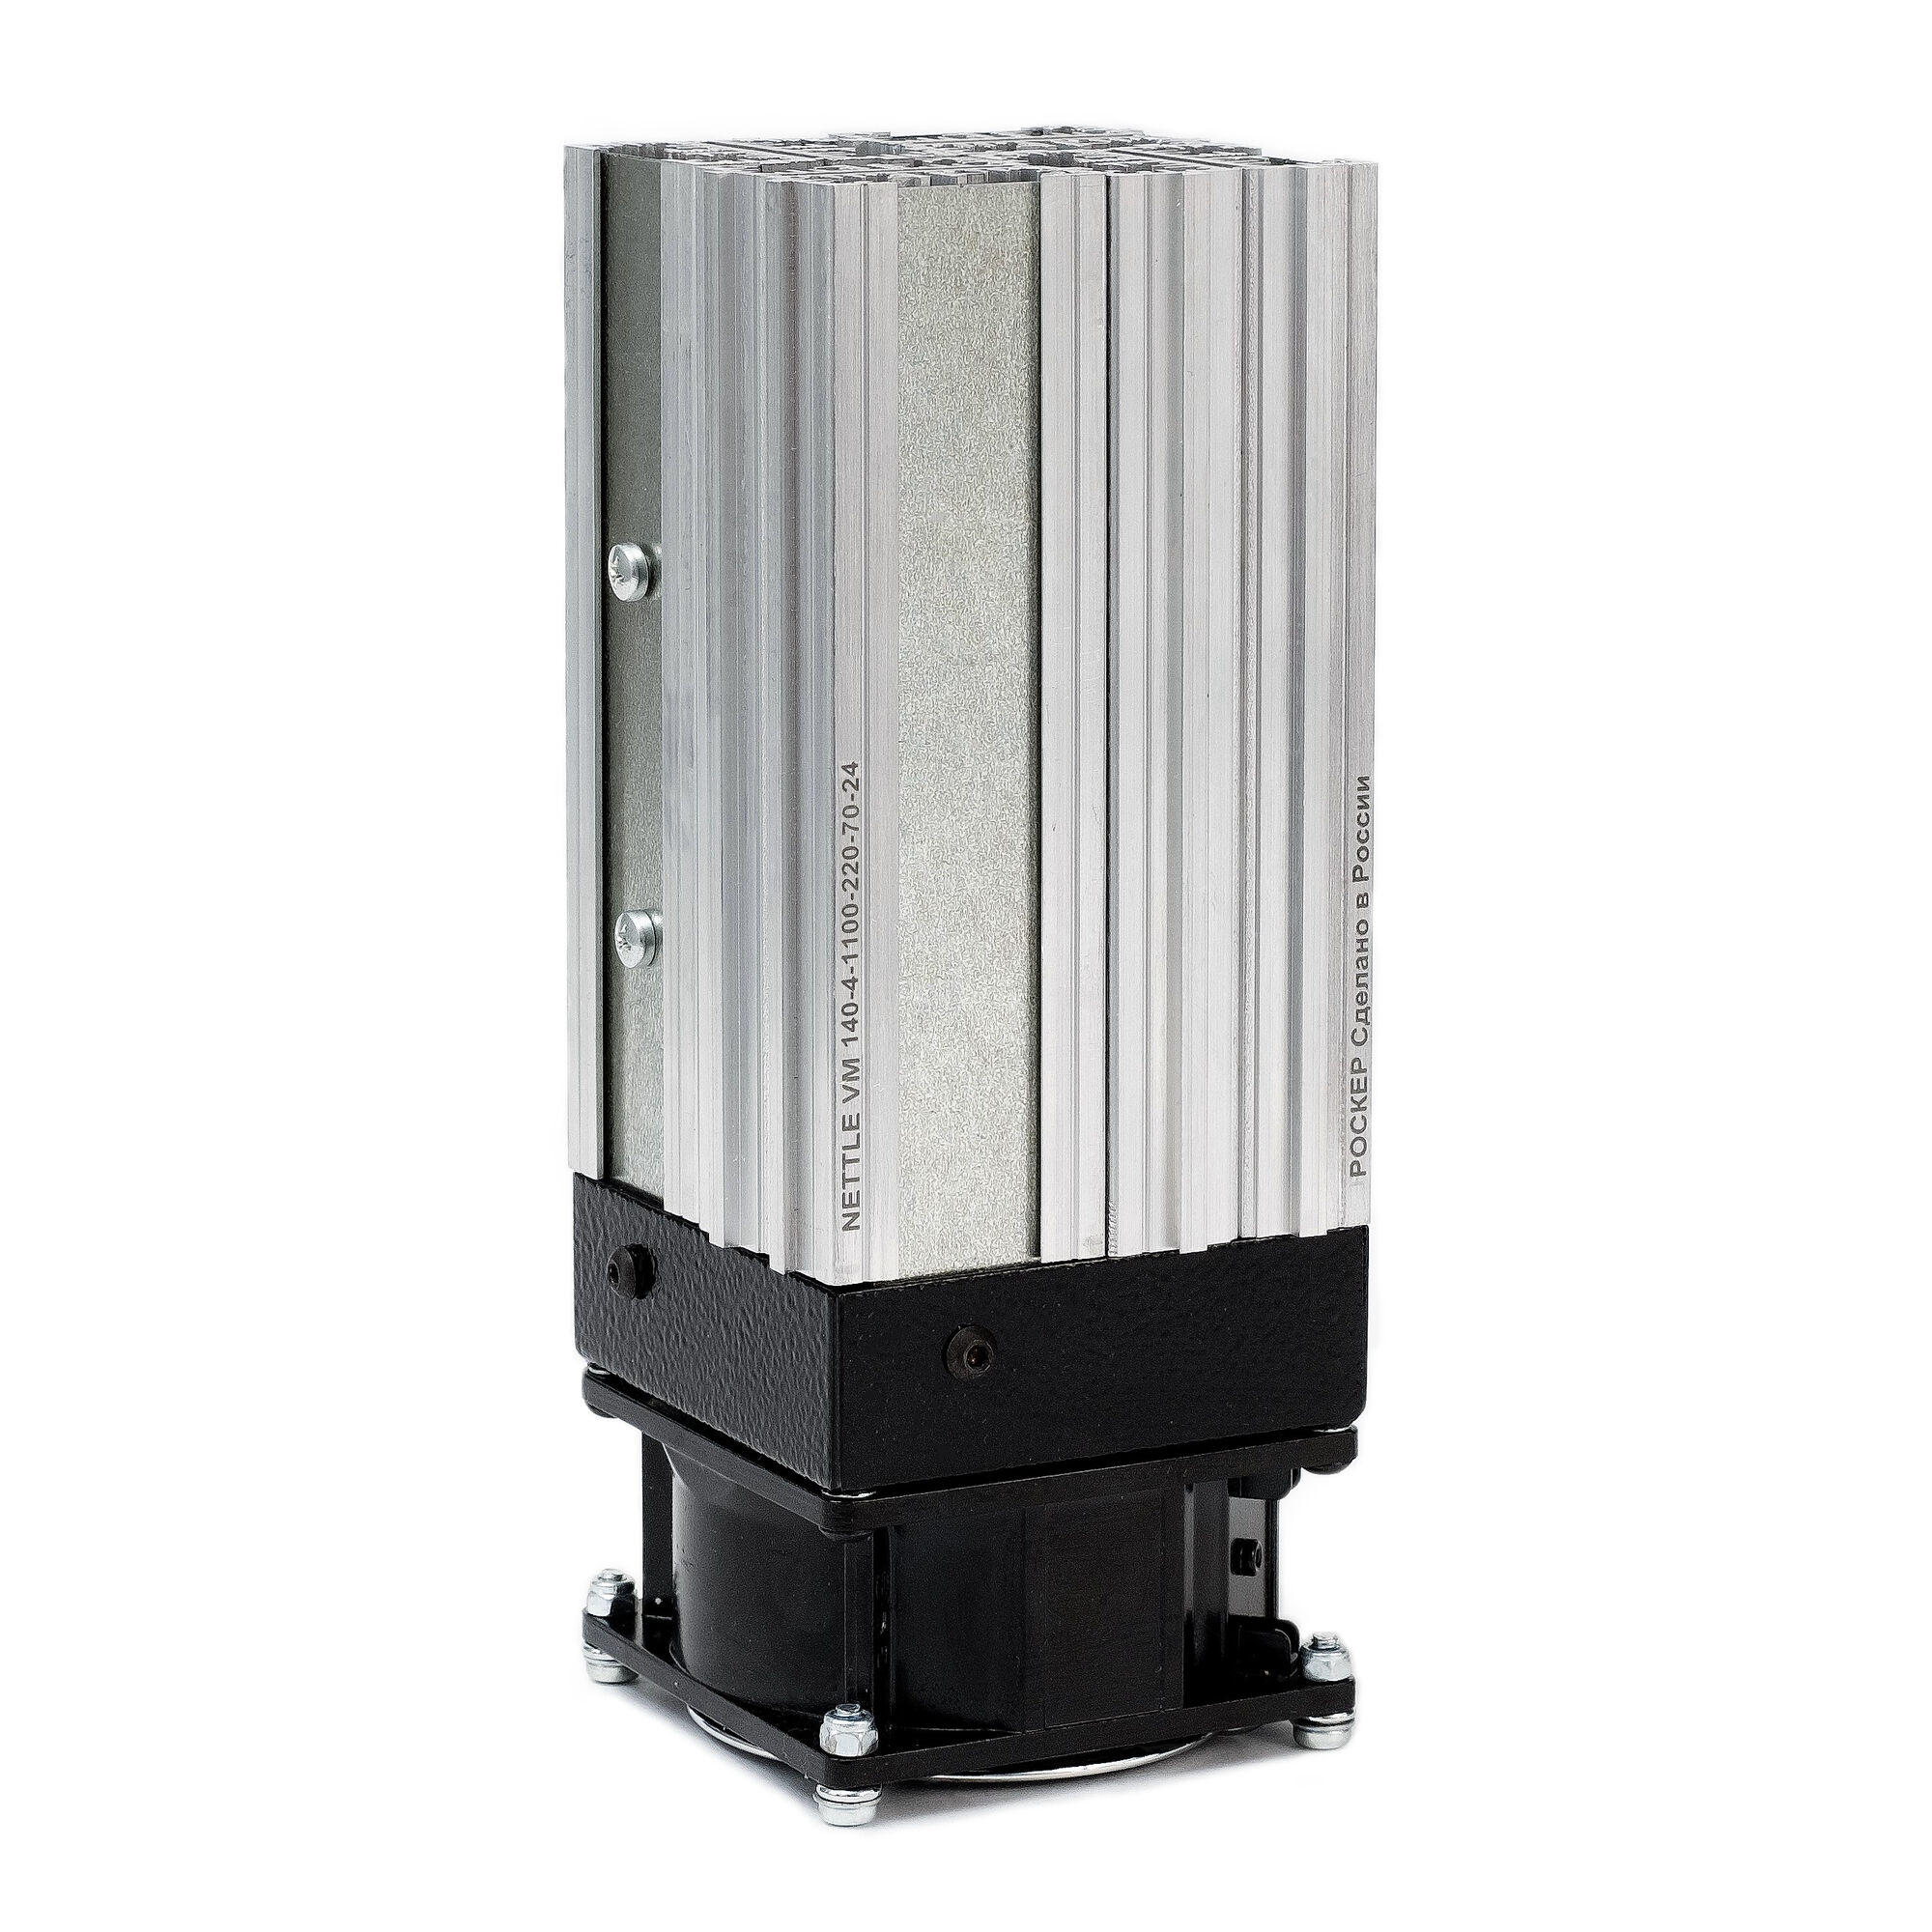 Нагреватель с вентилятором NETTLE VM 140-4-1100-220-70-24 1100Вт, 220В AC/DC, подключение проводом 1100Вт, 220В AC/DC, п